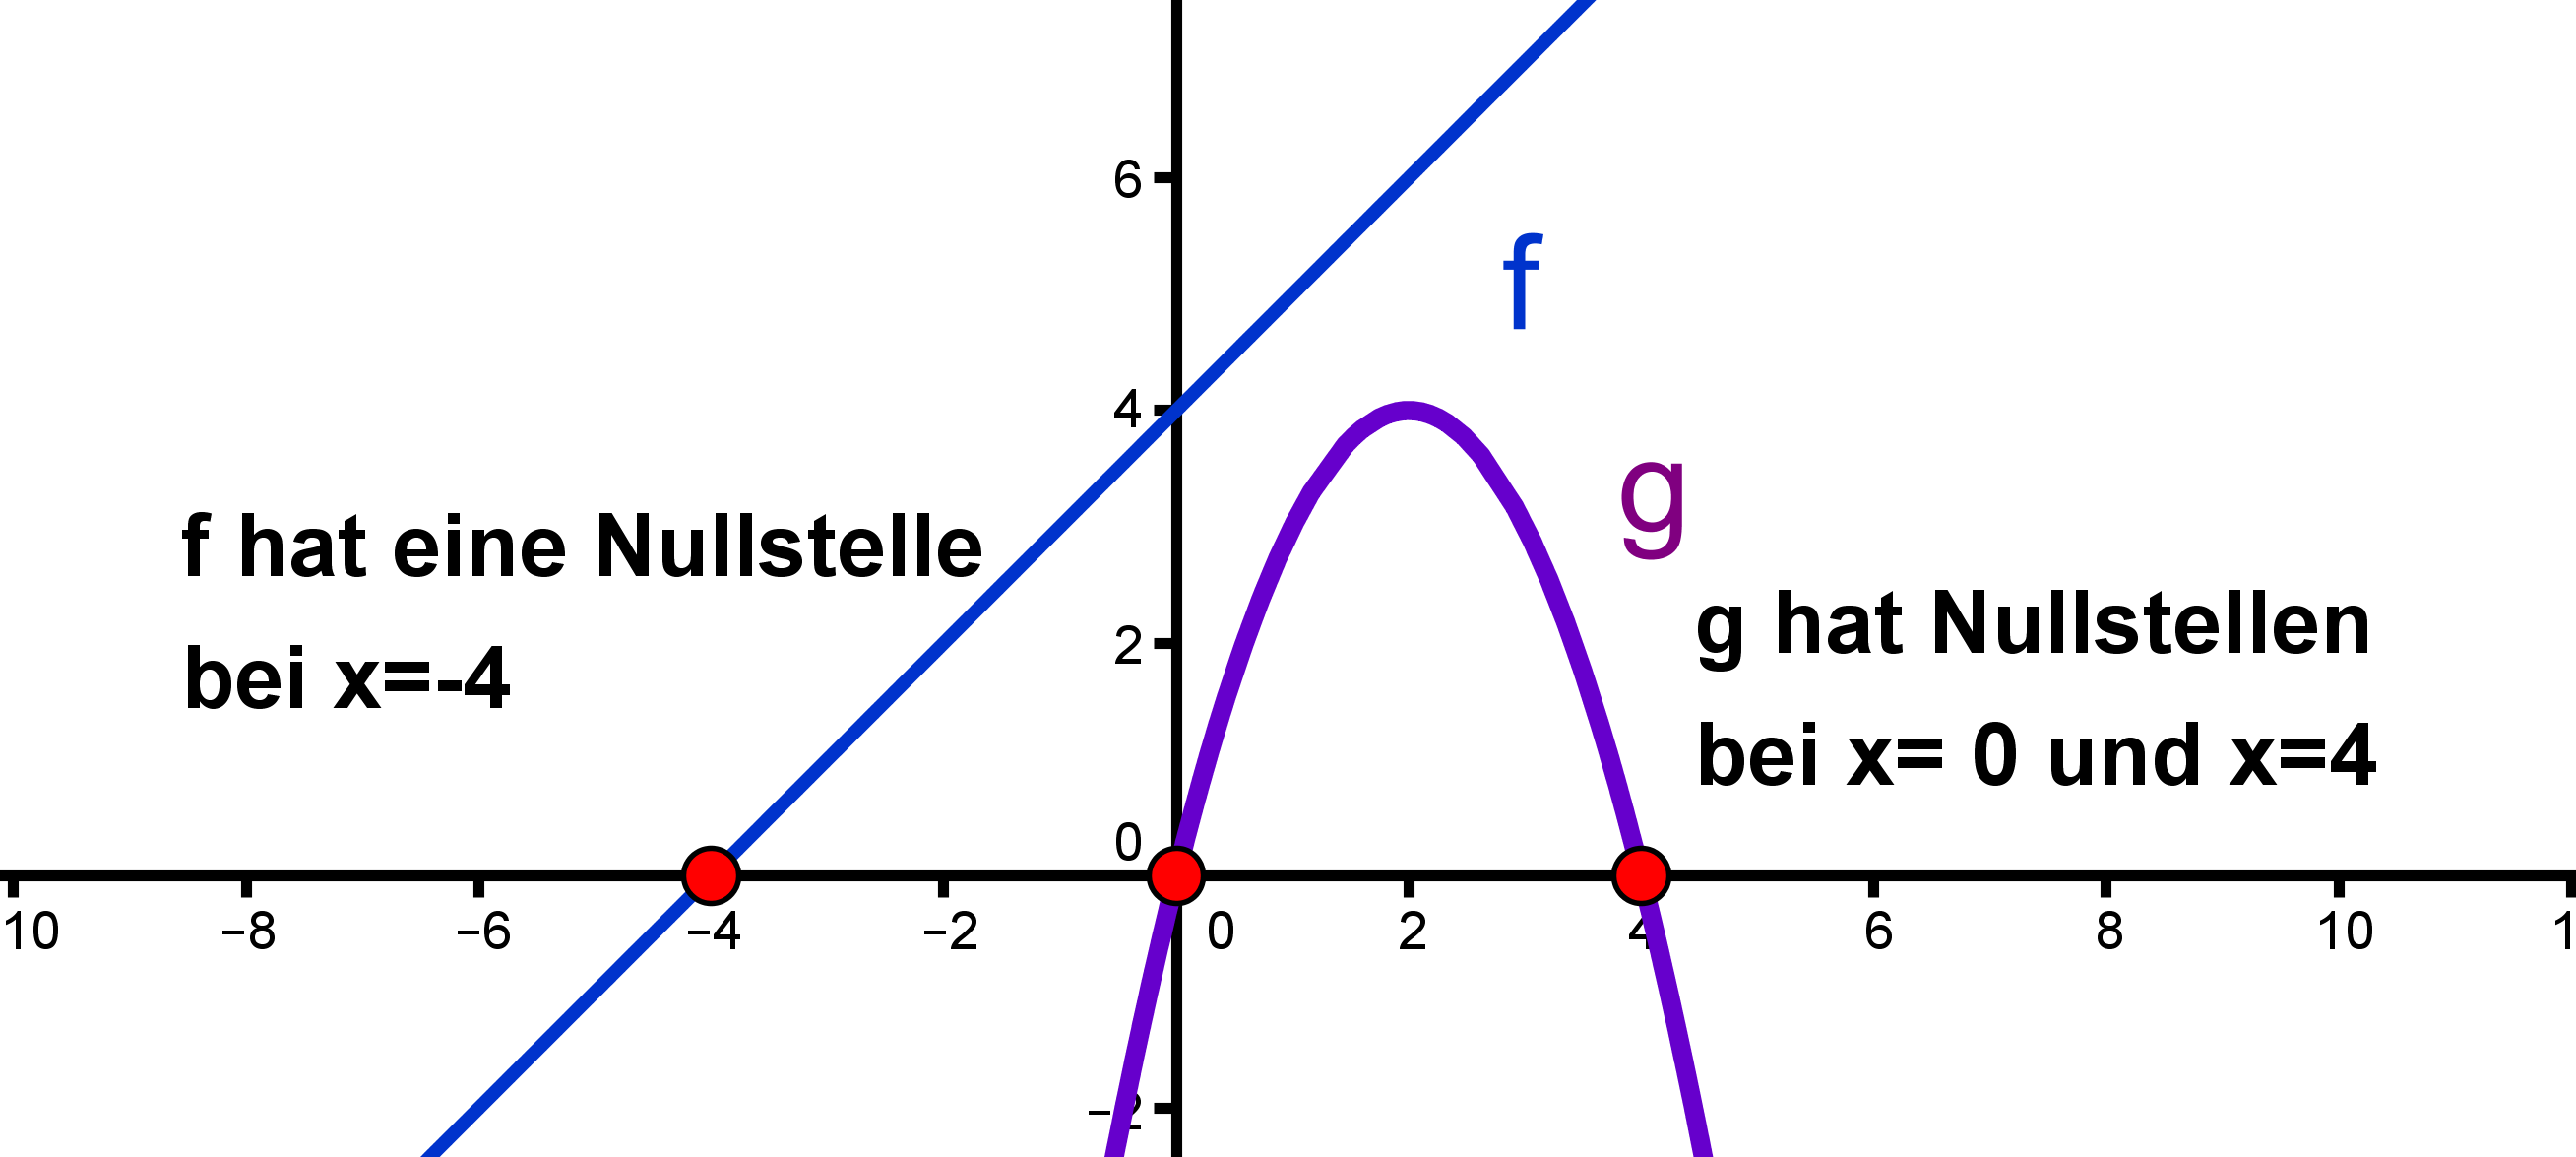 Hier sind die Nullstelle(n) der linearen Funktion  mit  und der quadratischen Funktion  mit  eingezeichnet.